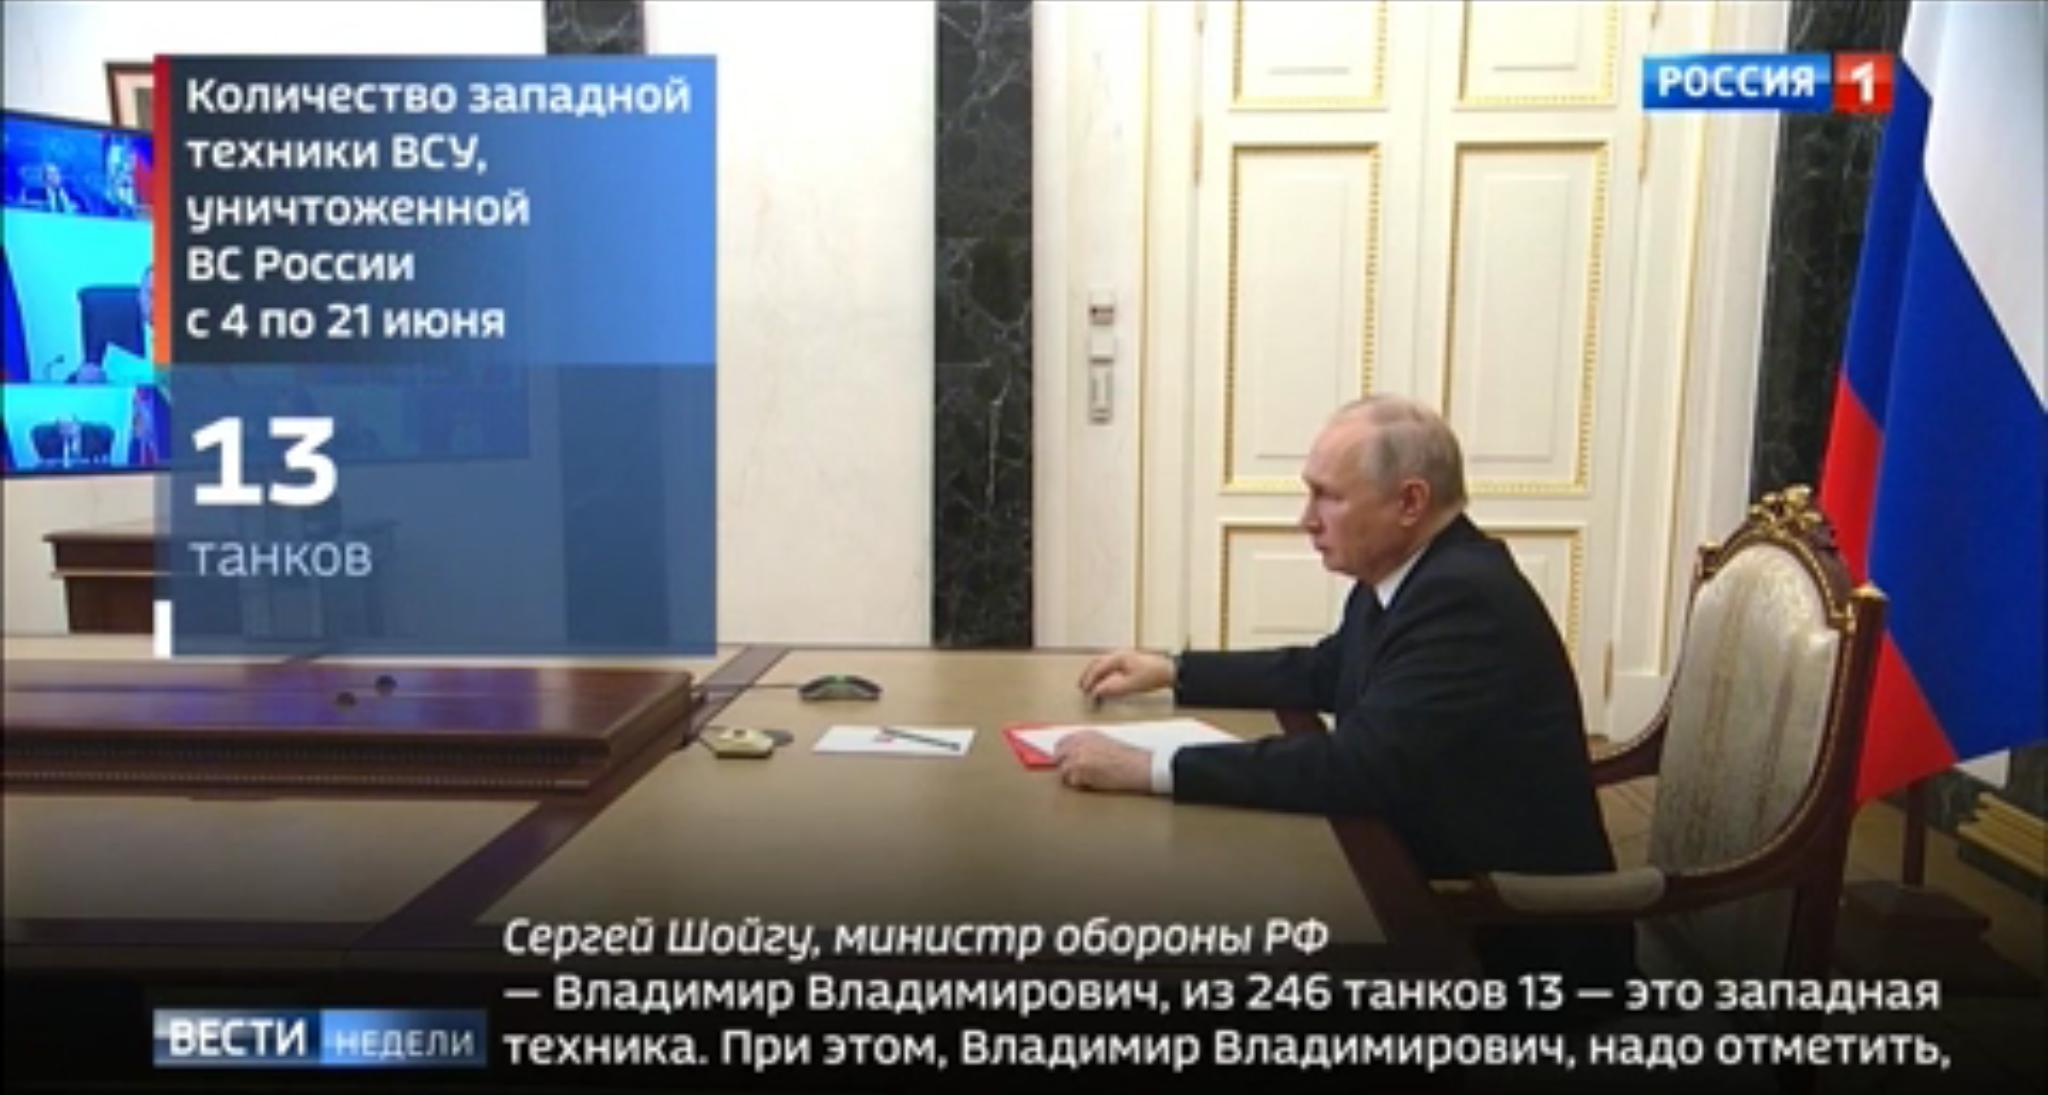 Putin (starszy mężczyzna) patrzy na ekran z którego mówi Szojgu. Nie widać go jednak, bo telewizja przysłoniła go wielkim napisem "13"